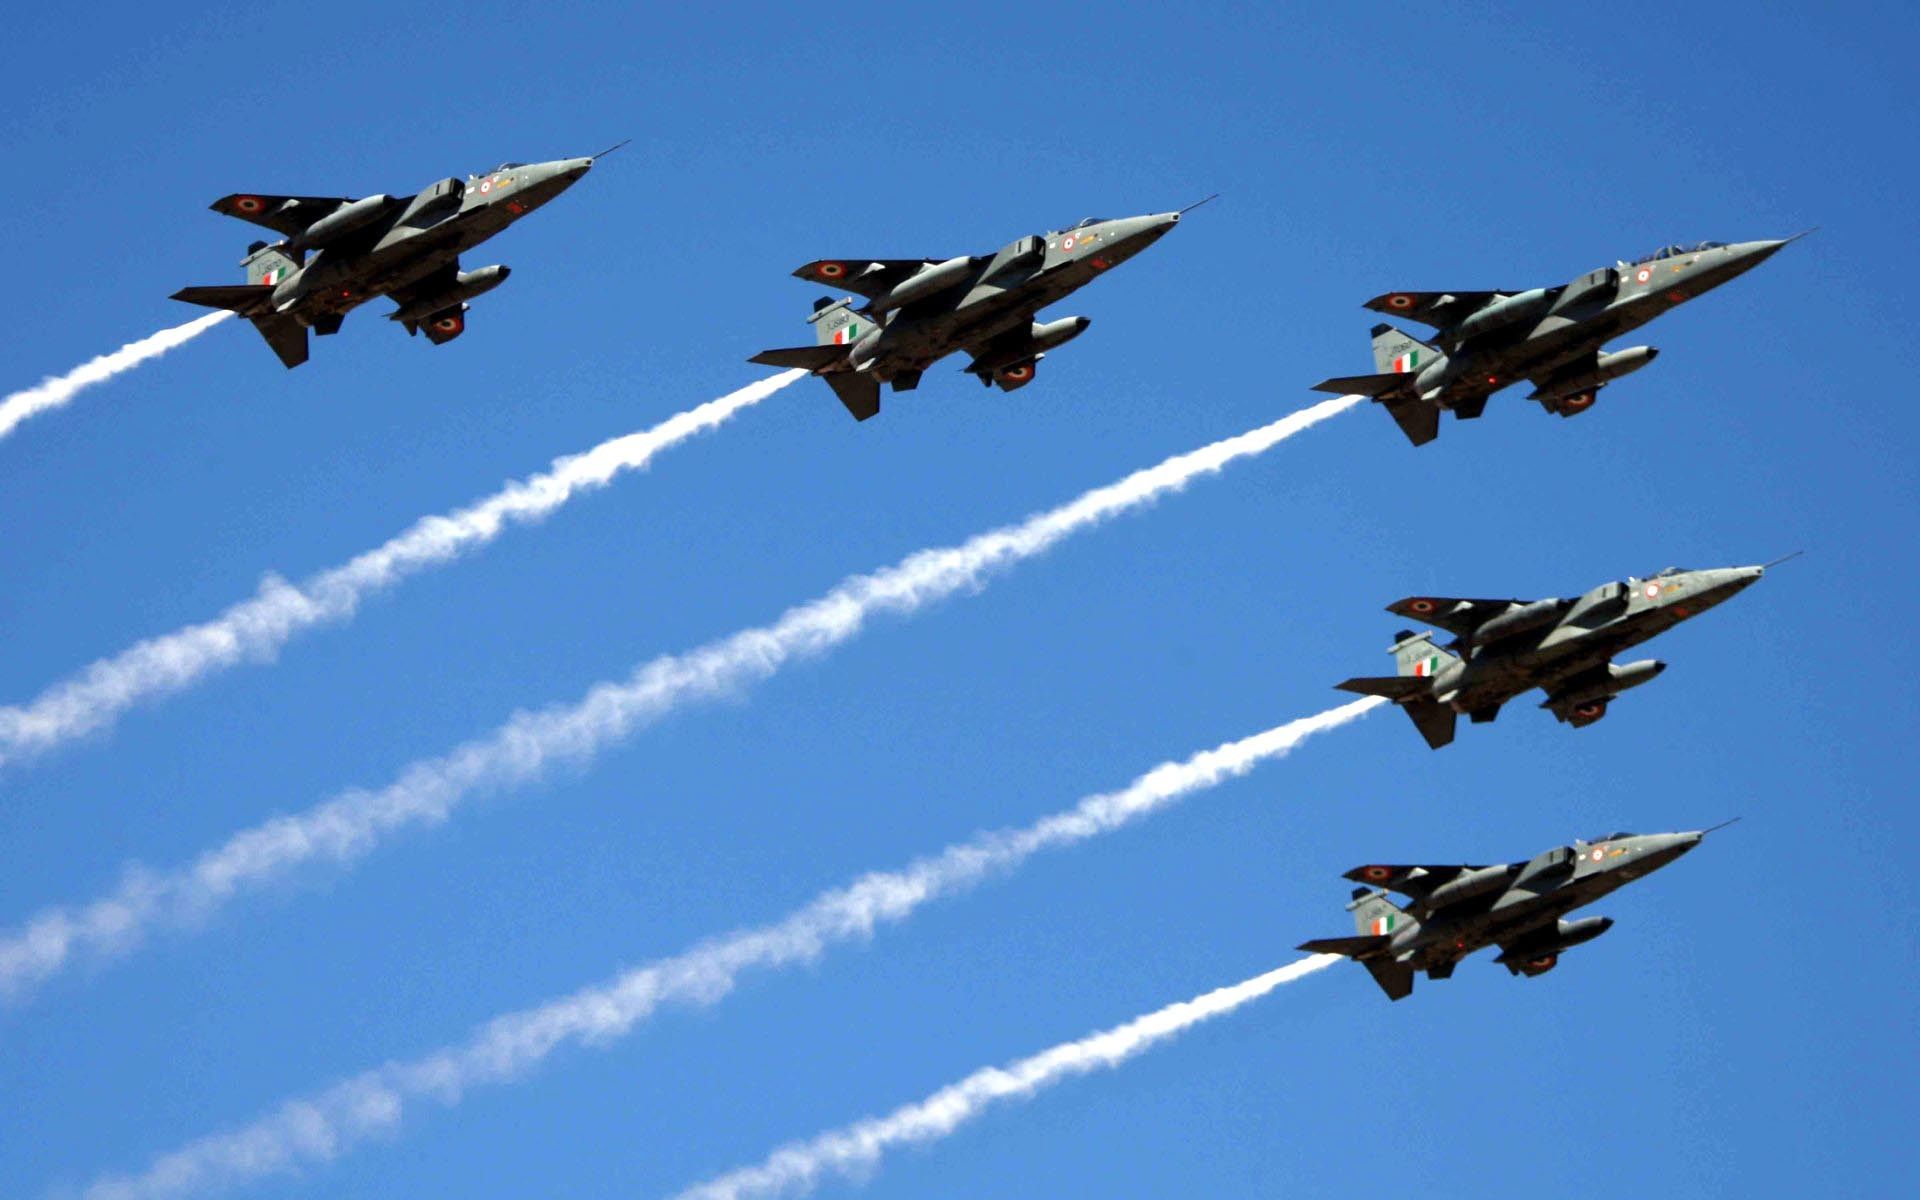 भारतीय वायु सेना आयरन फिस्ट में दिखाएगी अपनी शक्ति